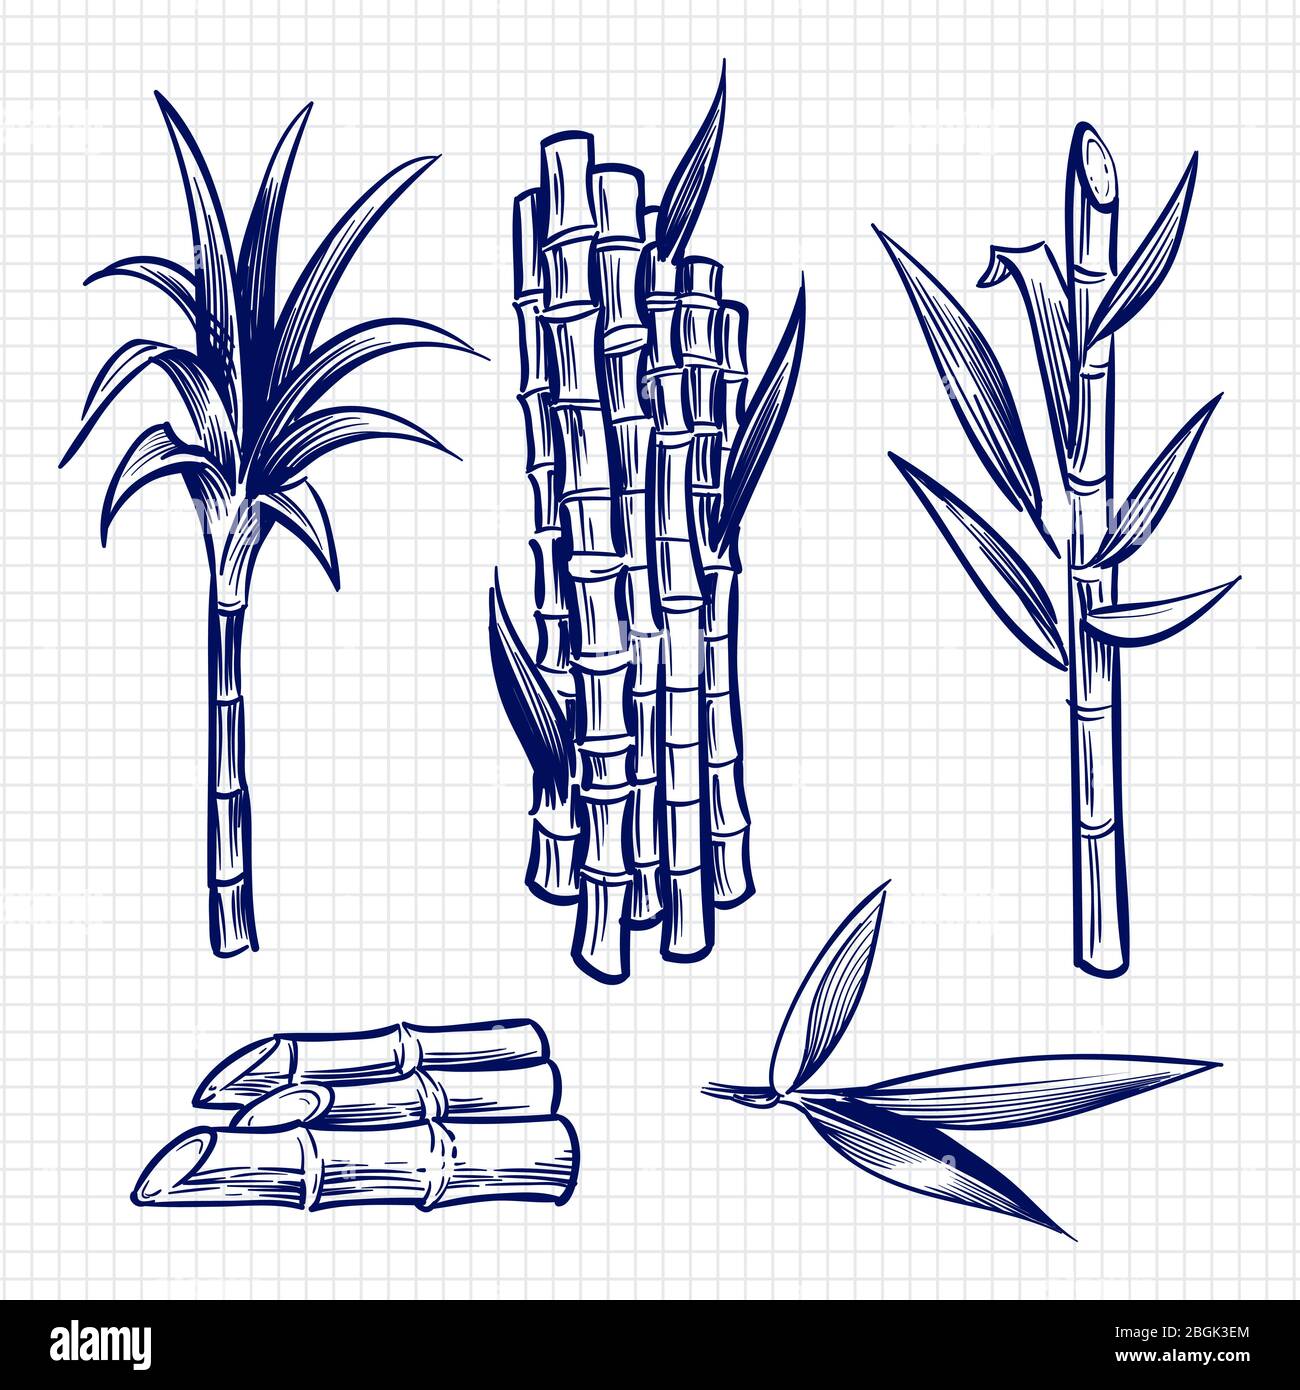 Illustration vectorielle de jeu de canne à sucre dessinée à la main. Plante de canne, tige d'ingrédient de sucre, tige de récolte de canne à sucre Illustration de Vecteur